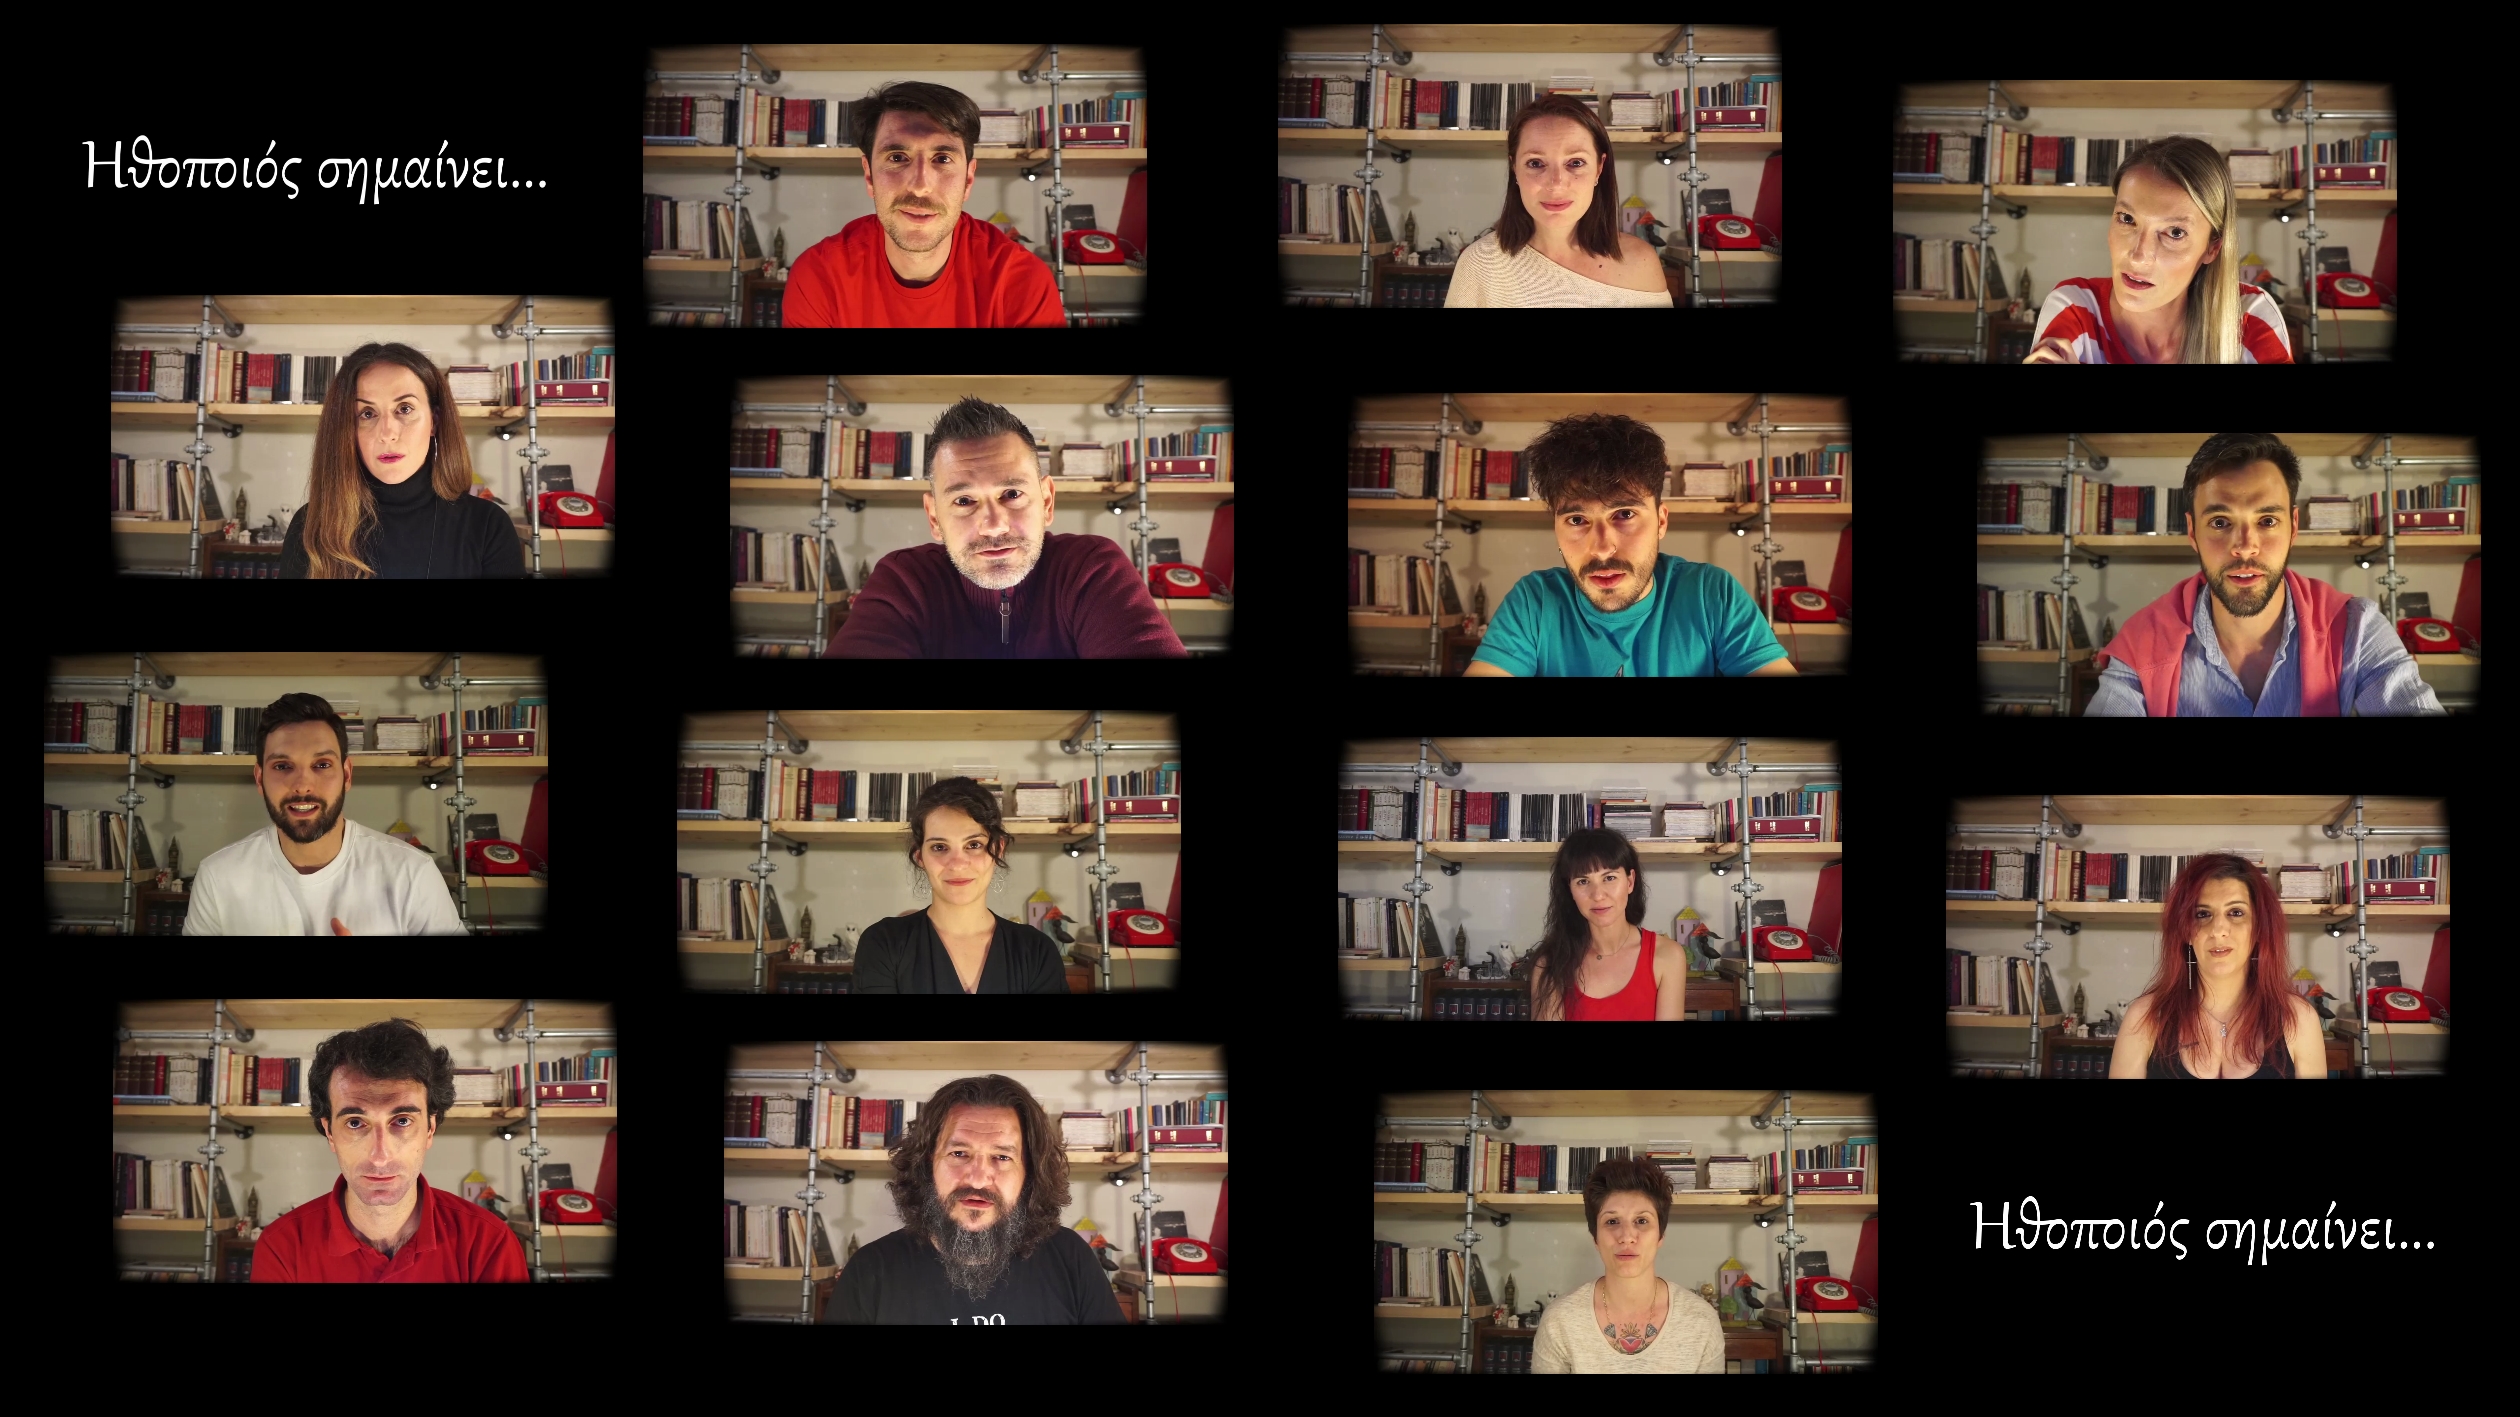 «Ηθοποιός σημαίνει...»: 15 πρωταγωνιστές απαντούν